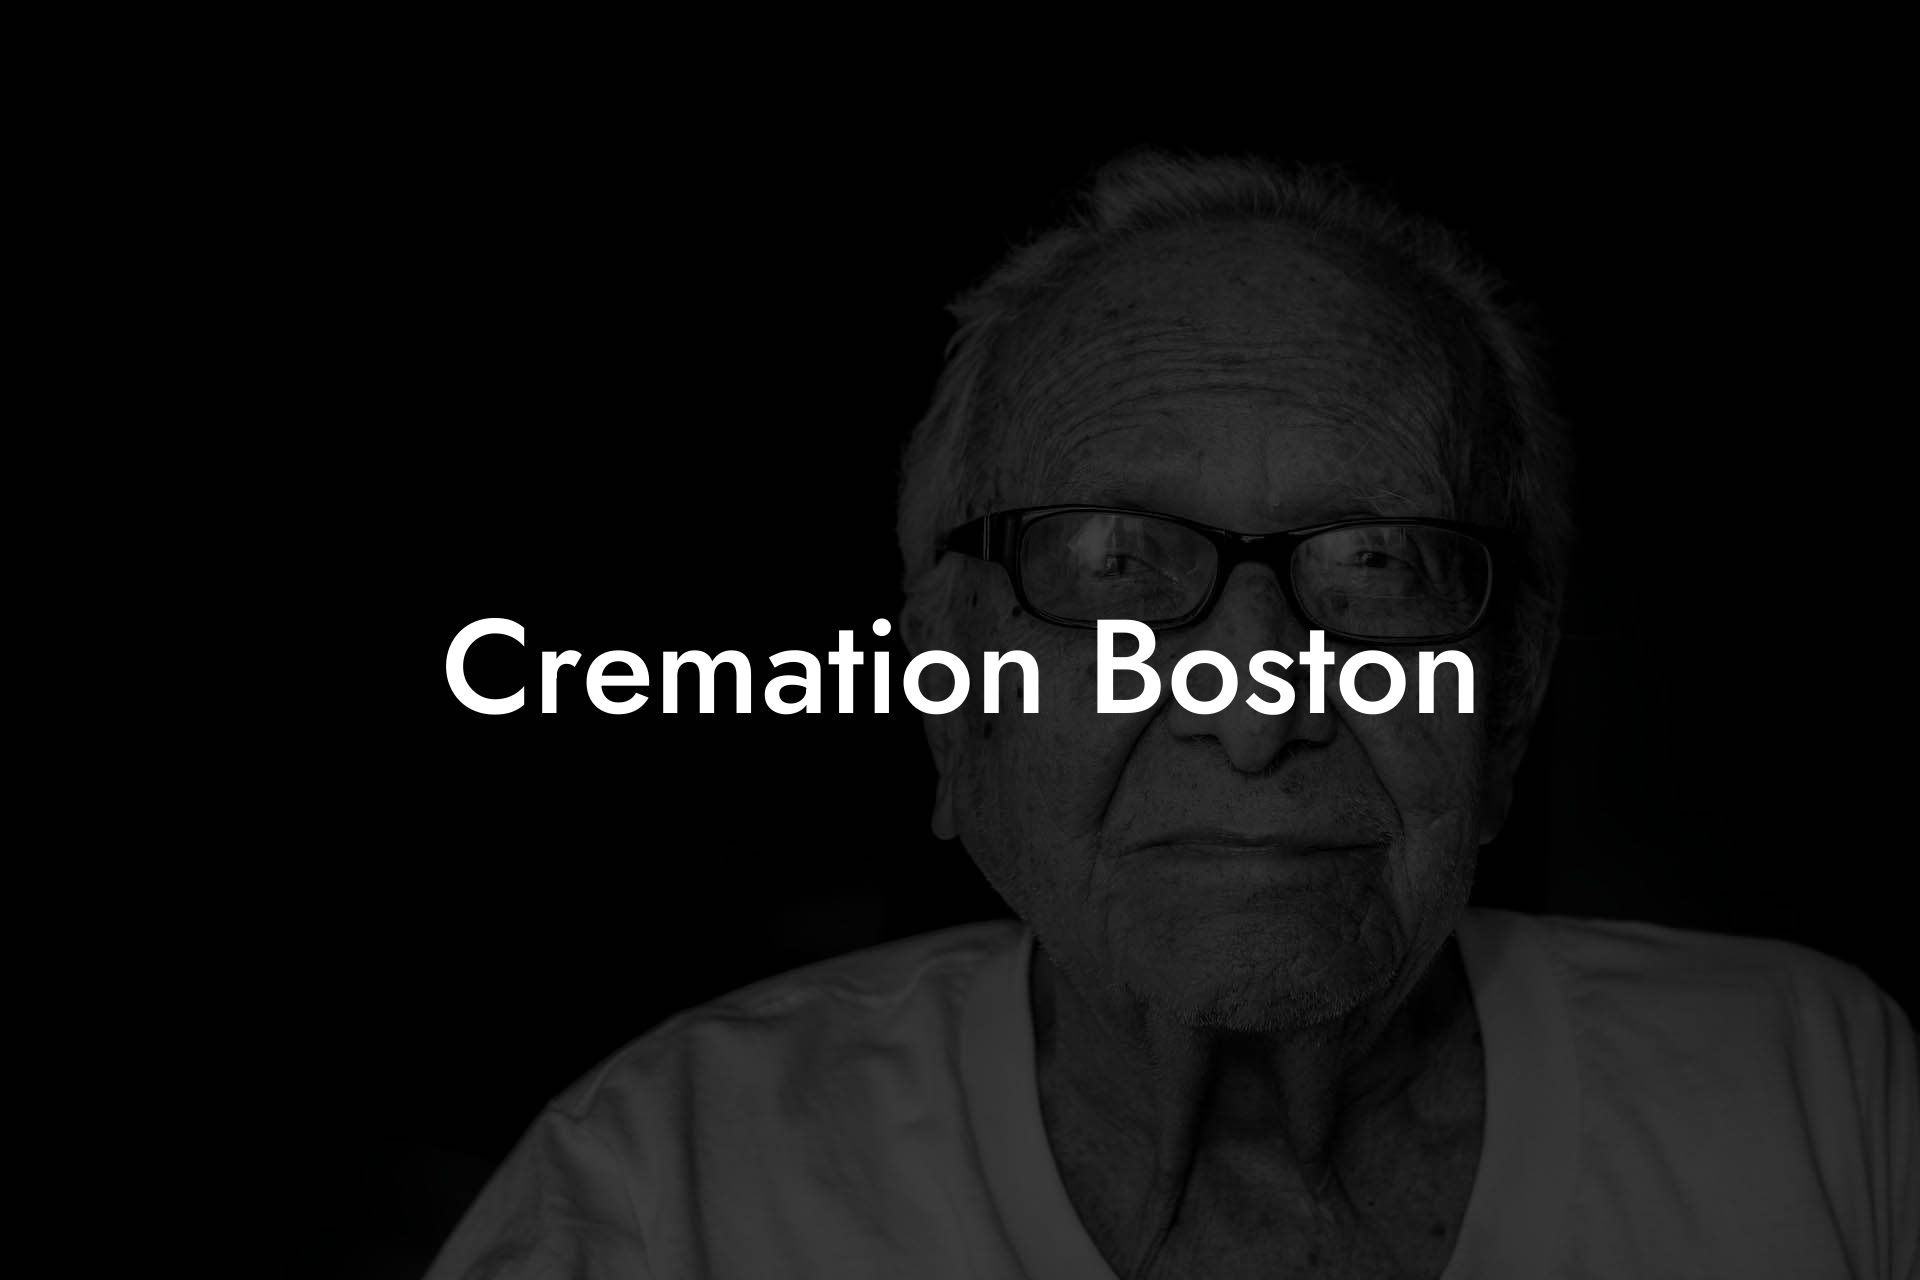 Cremation Boston